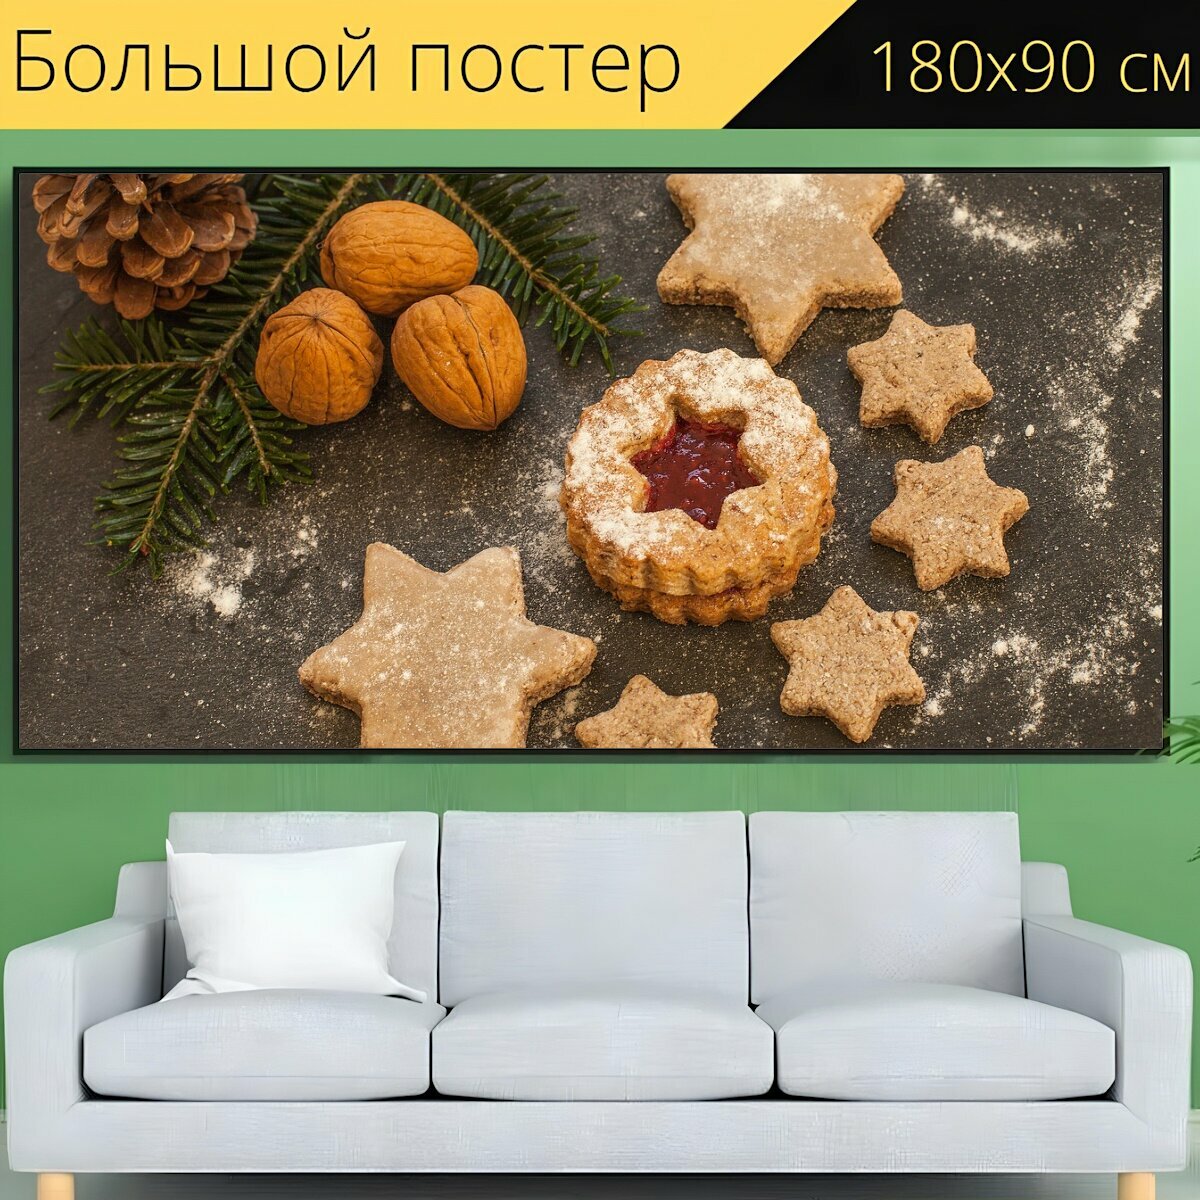 Большой постер "Печенье, печь, выпечка" 180 x 90 см. для интерьера